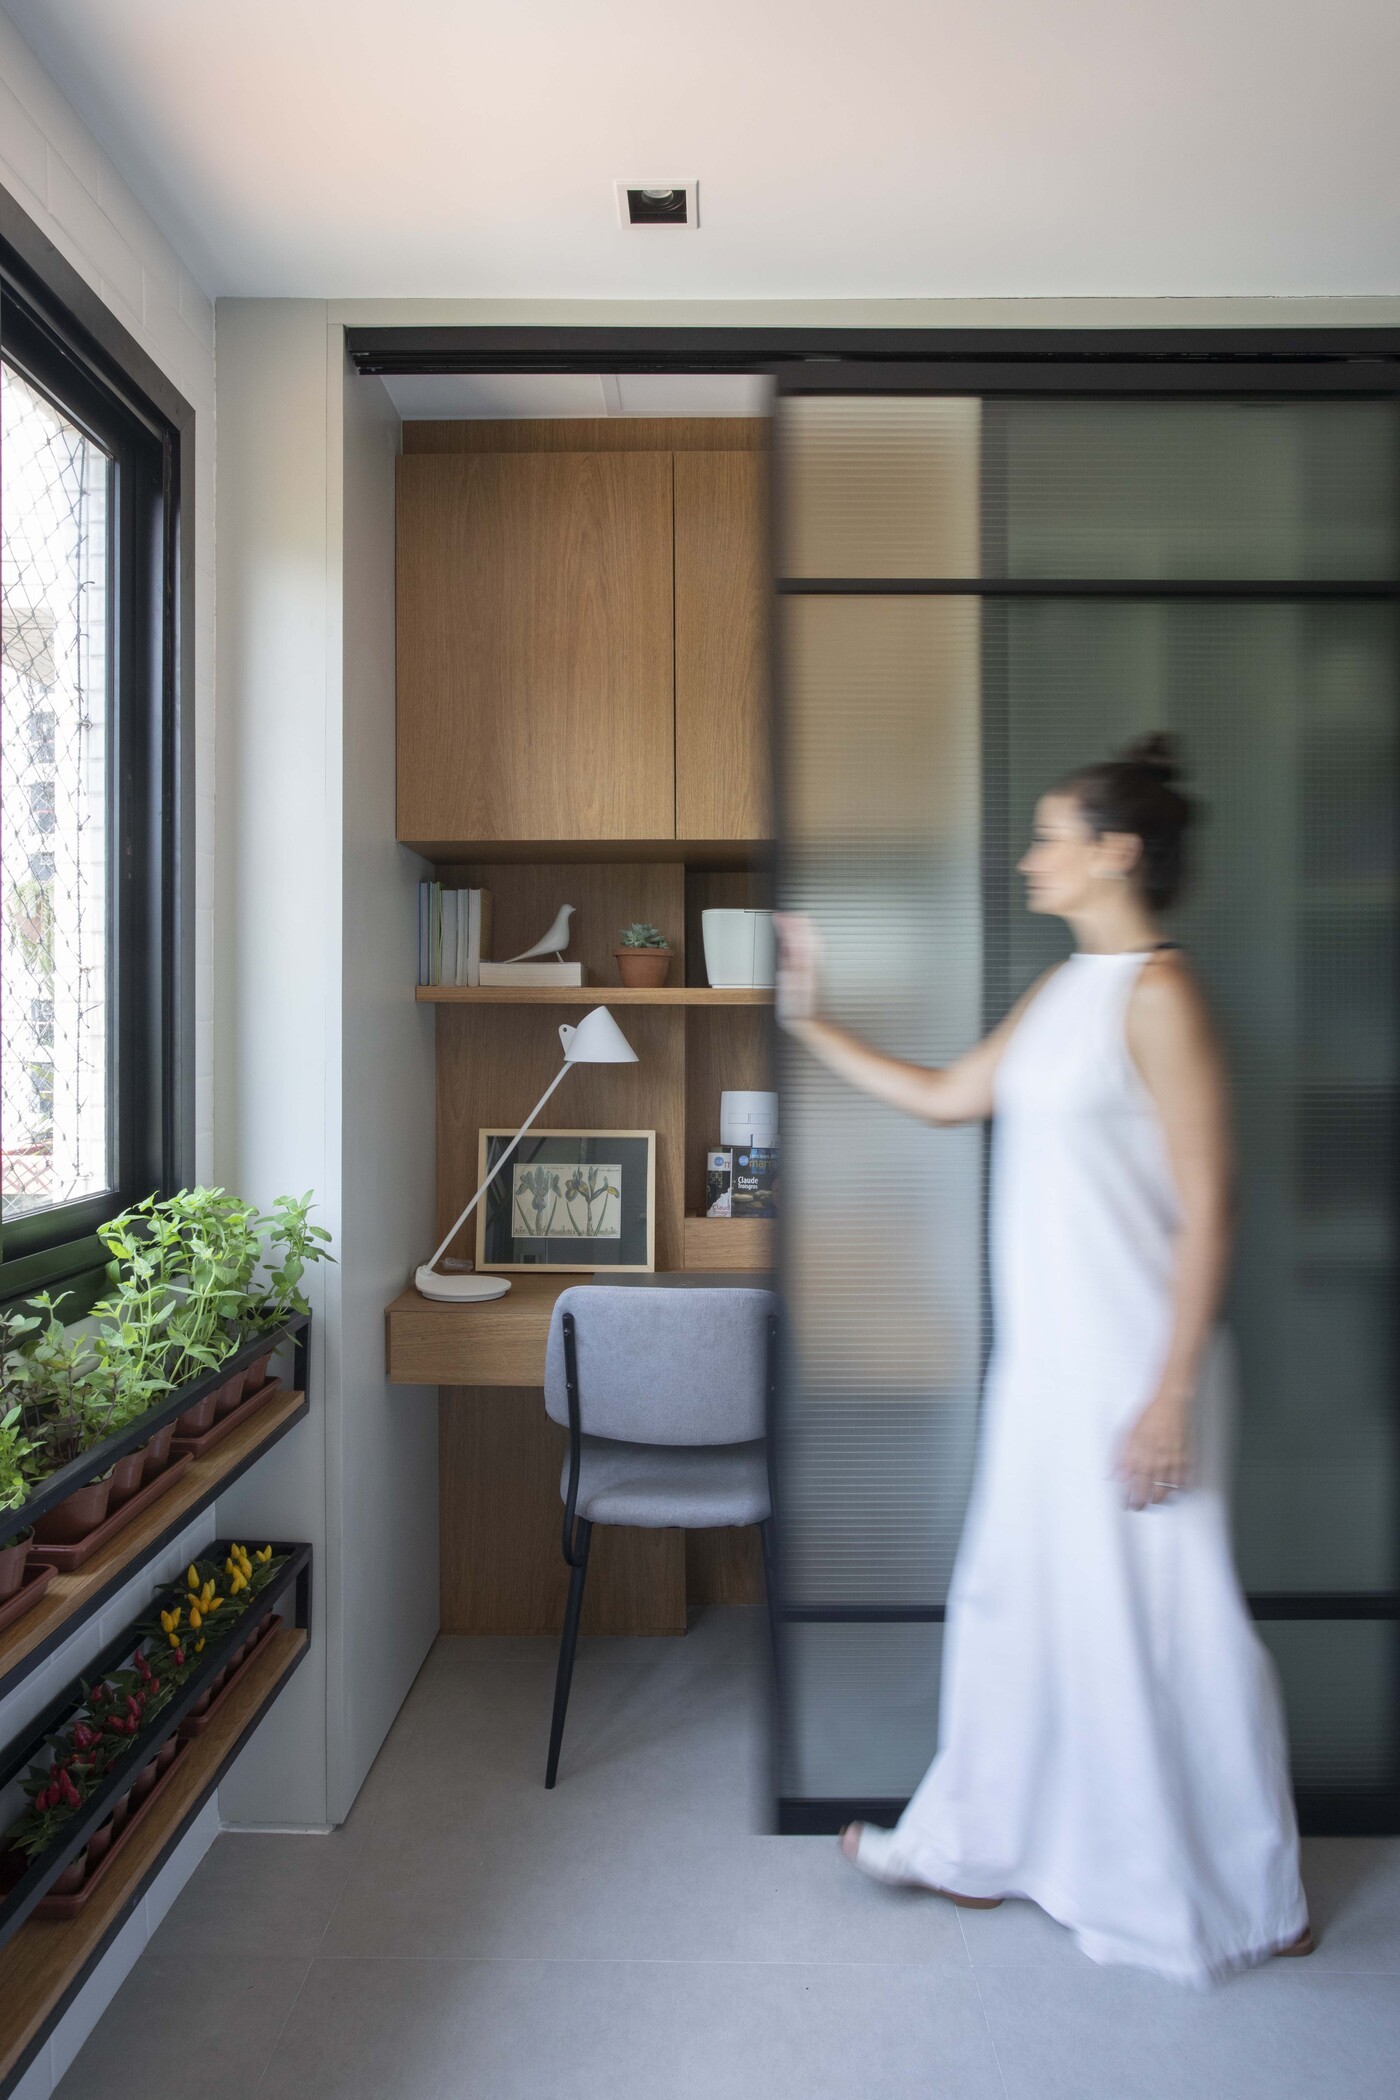 Décor do dia: cozinha minimalista tem home office integrado (Foto: Juliano Colodeti/ MCA Estúdio)